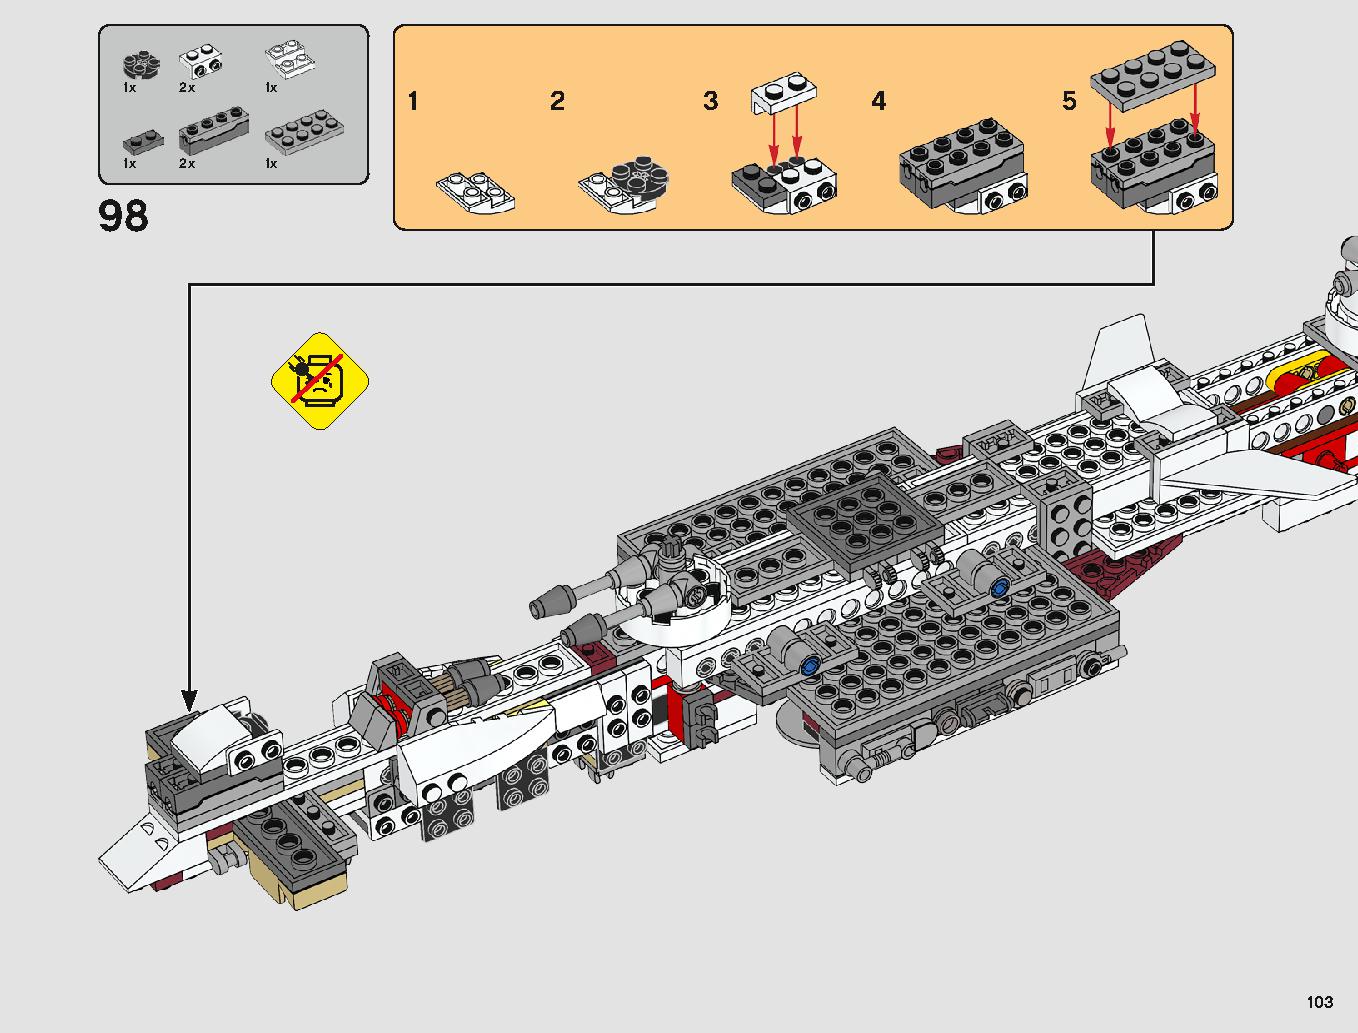 タンティブIV™ 75244 レゴの商品情報 レゴの説明書・組立方法 103 page